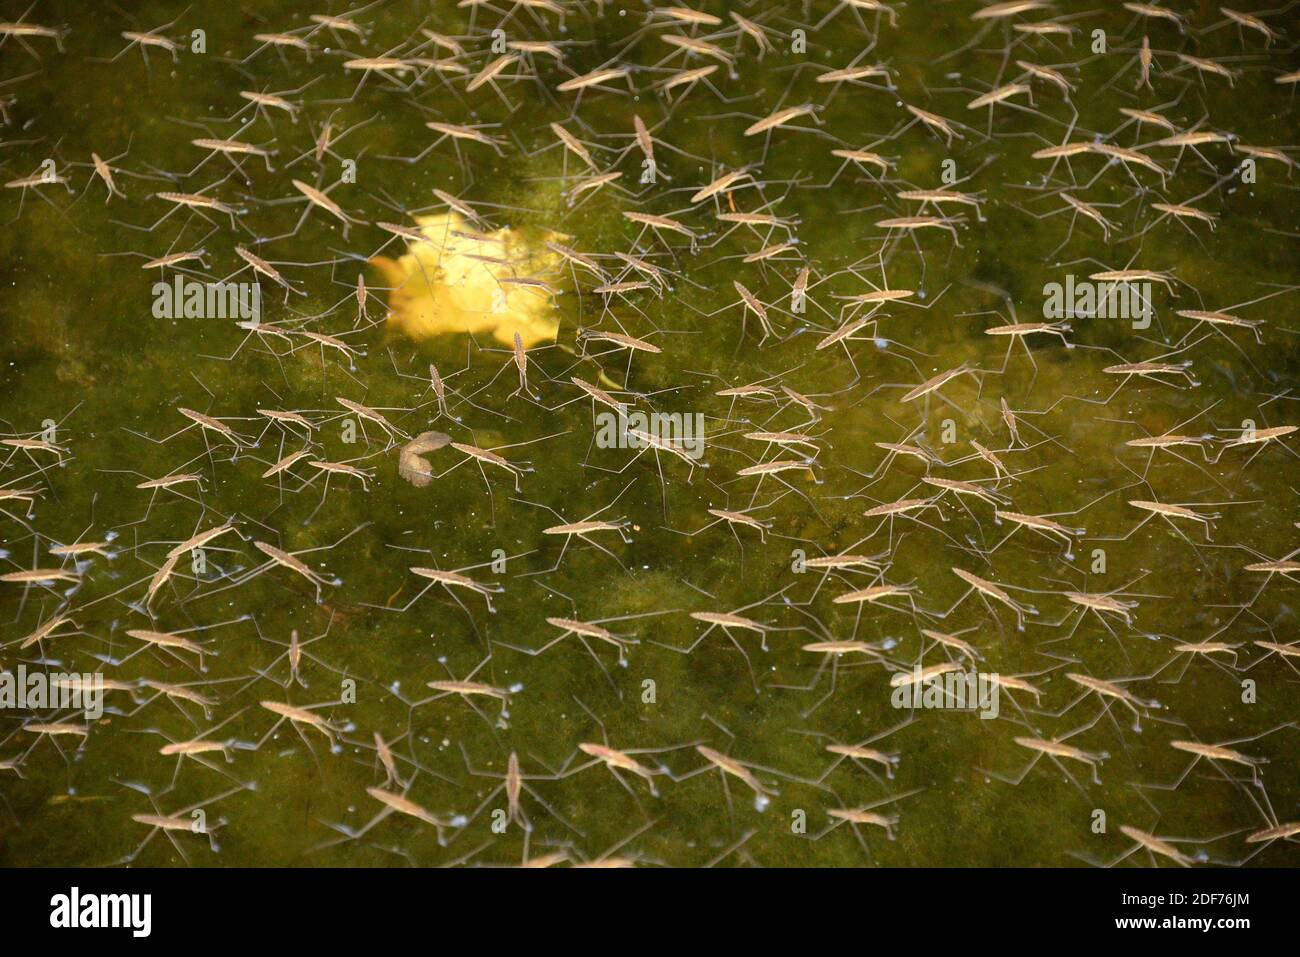 El patinador común del estanque o el strider común del agua (Gerris lacustris) es un insecto acuático nativo a Europa. Esta foto fue tomada en el Río Orlina, Girona Foto de stock